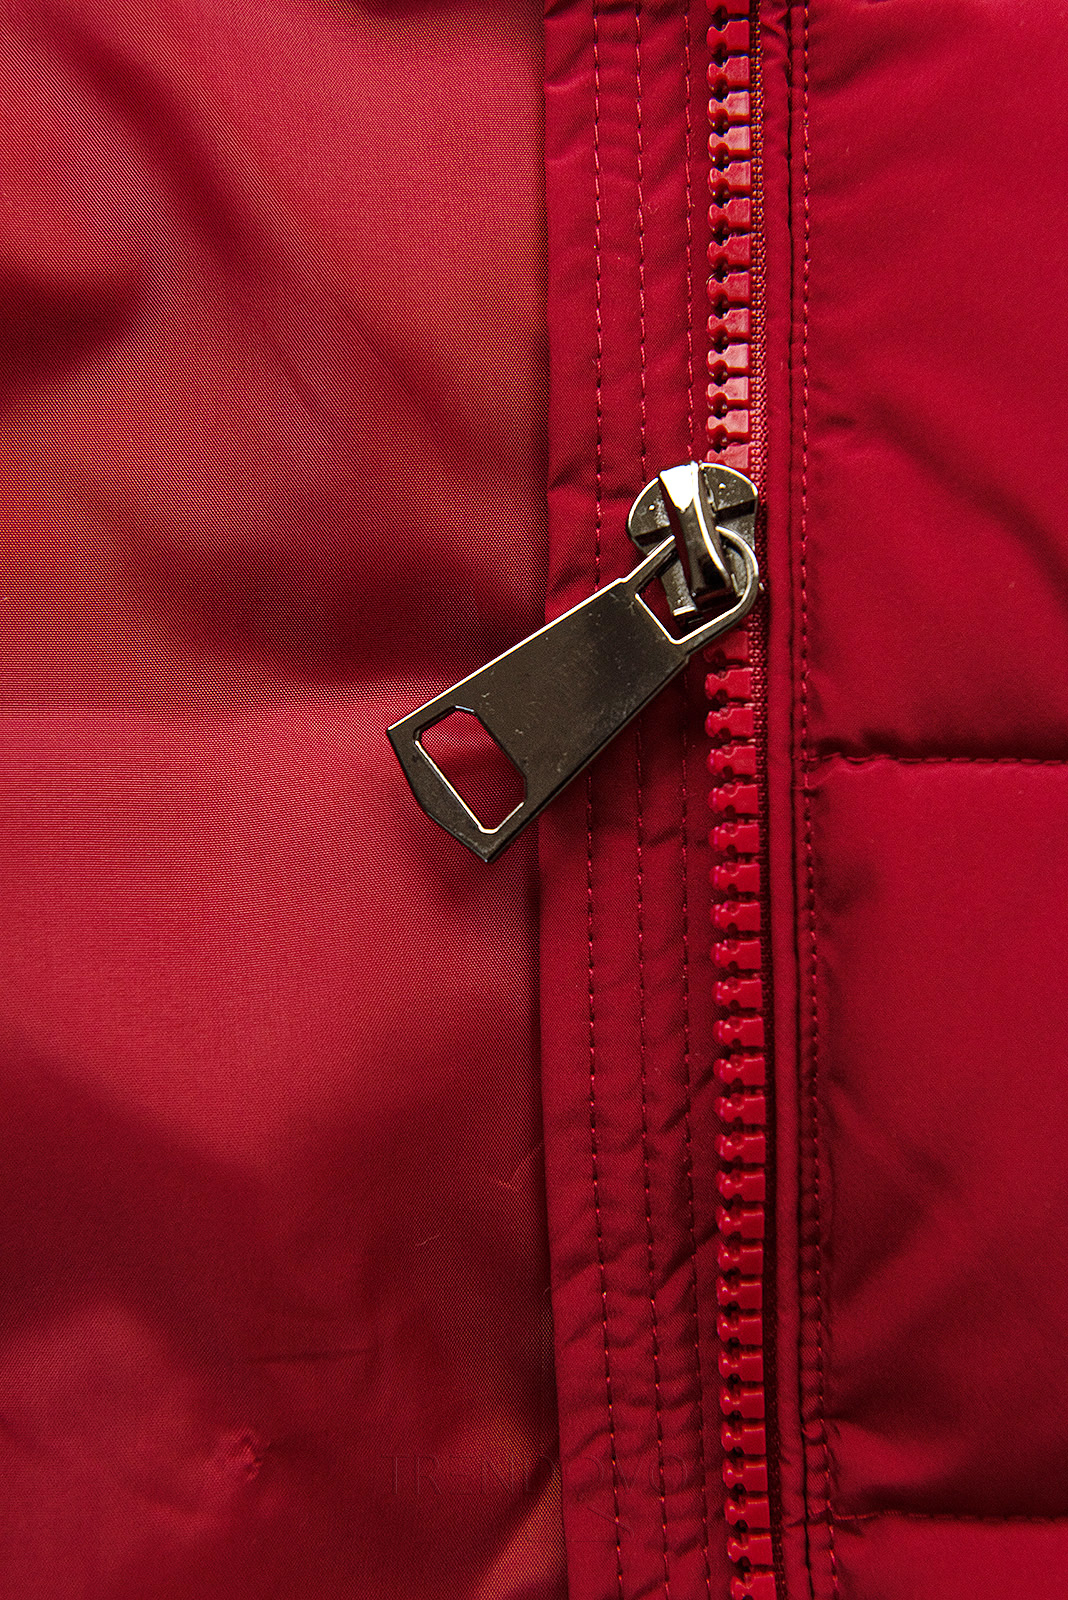 Vínovočervená prešívaná zimná bunda s kožušinou